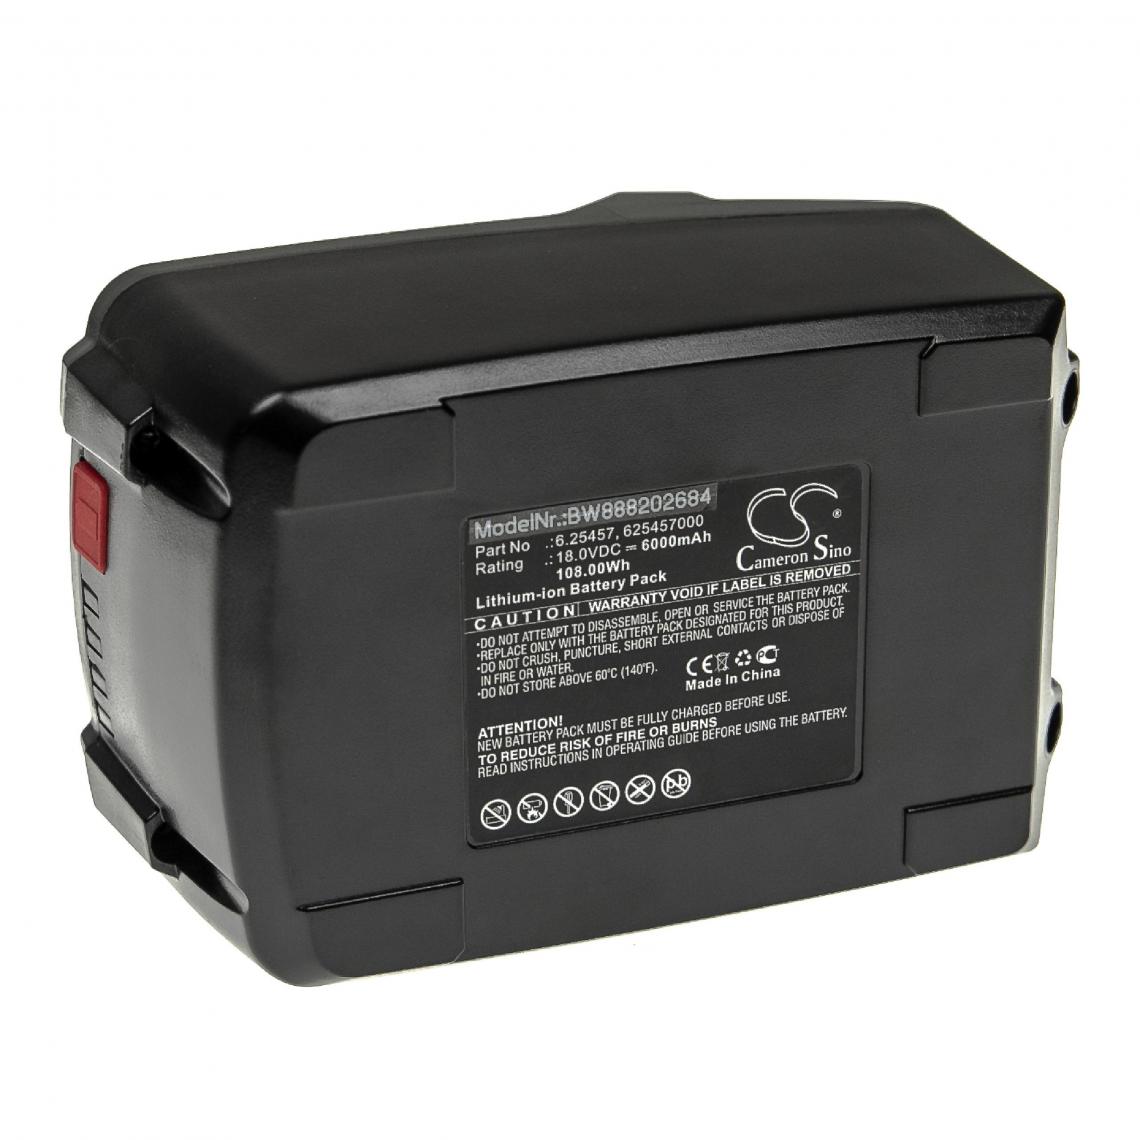 Vhbw - vhbw Batterie compatible avec Birchmeier A 130 AC1, A 50 AC1, A 75 AC1, BM 1035 AC1 outil électrique (6000mAh Li-ion 18 V) - Autre appareil de mesure